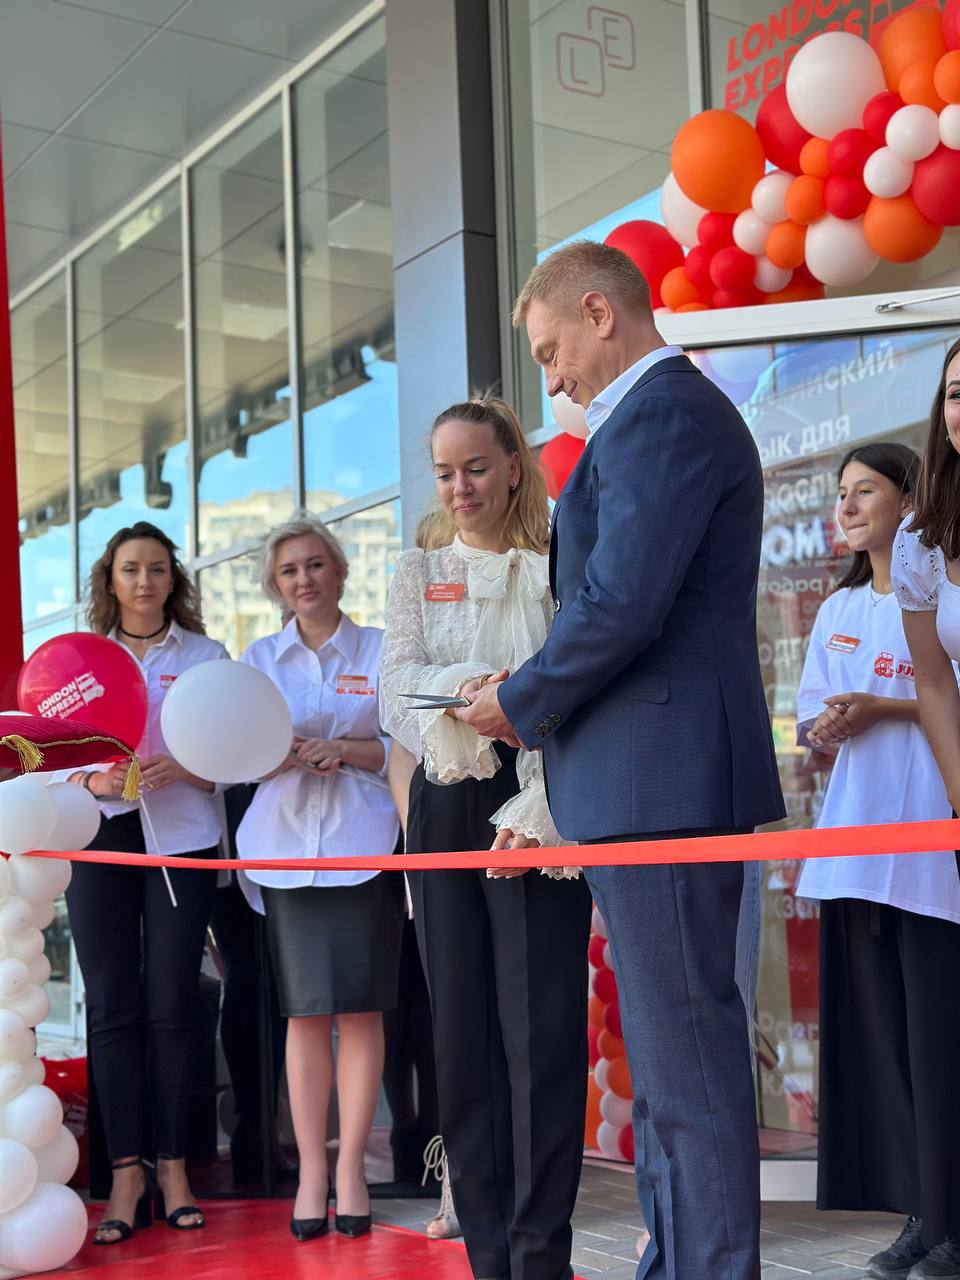 В Новороссийске открылись два проекта London Express Group: школа иностранных языков и центр детского развития